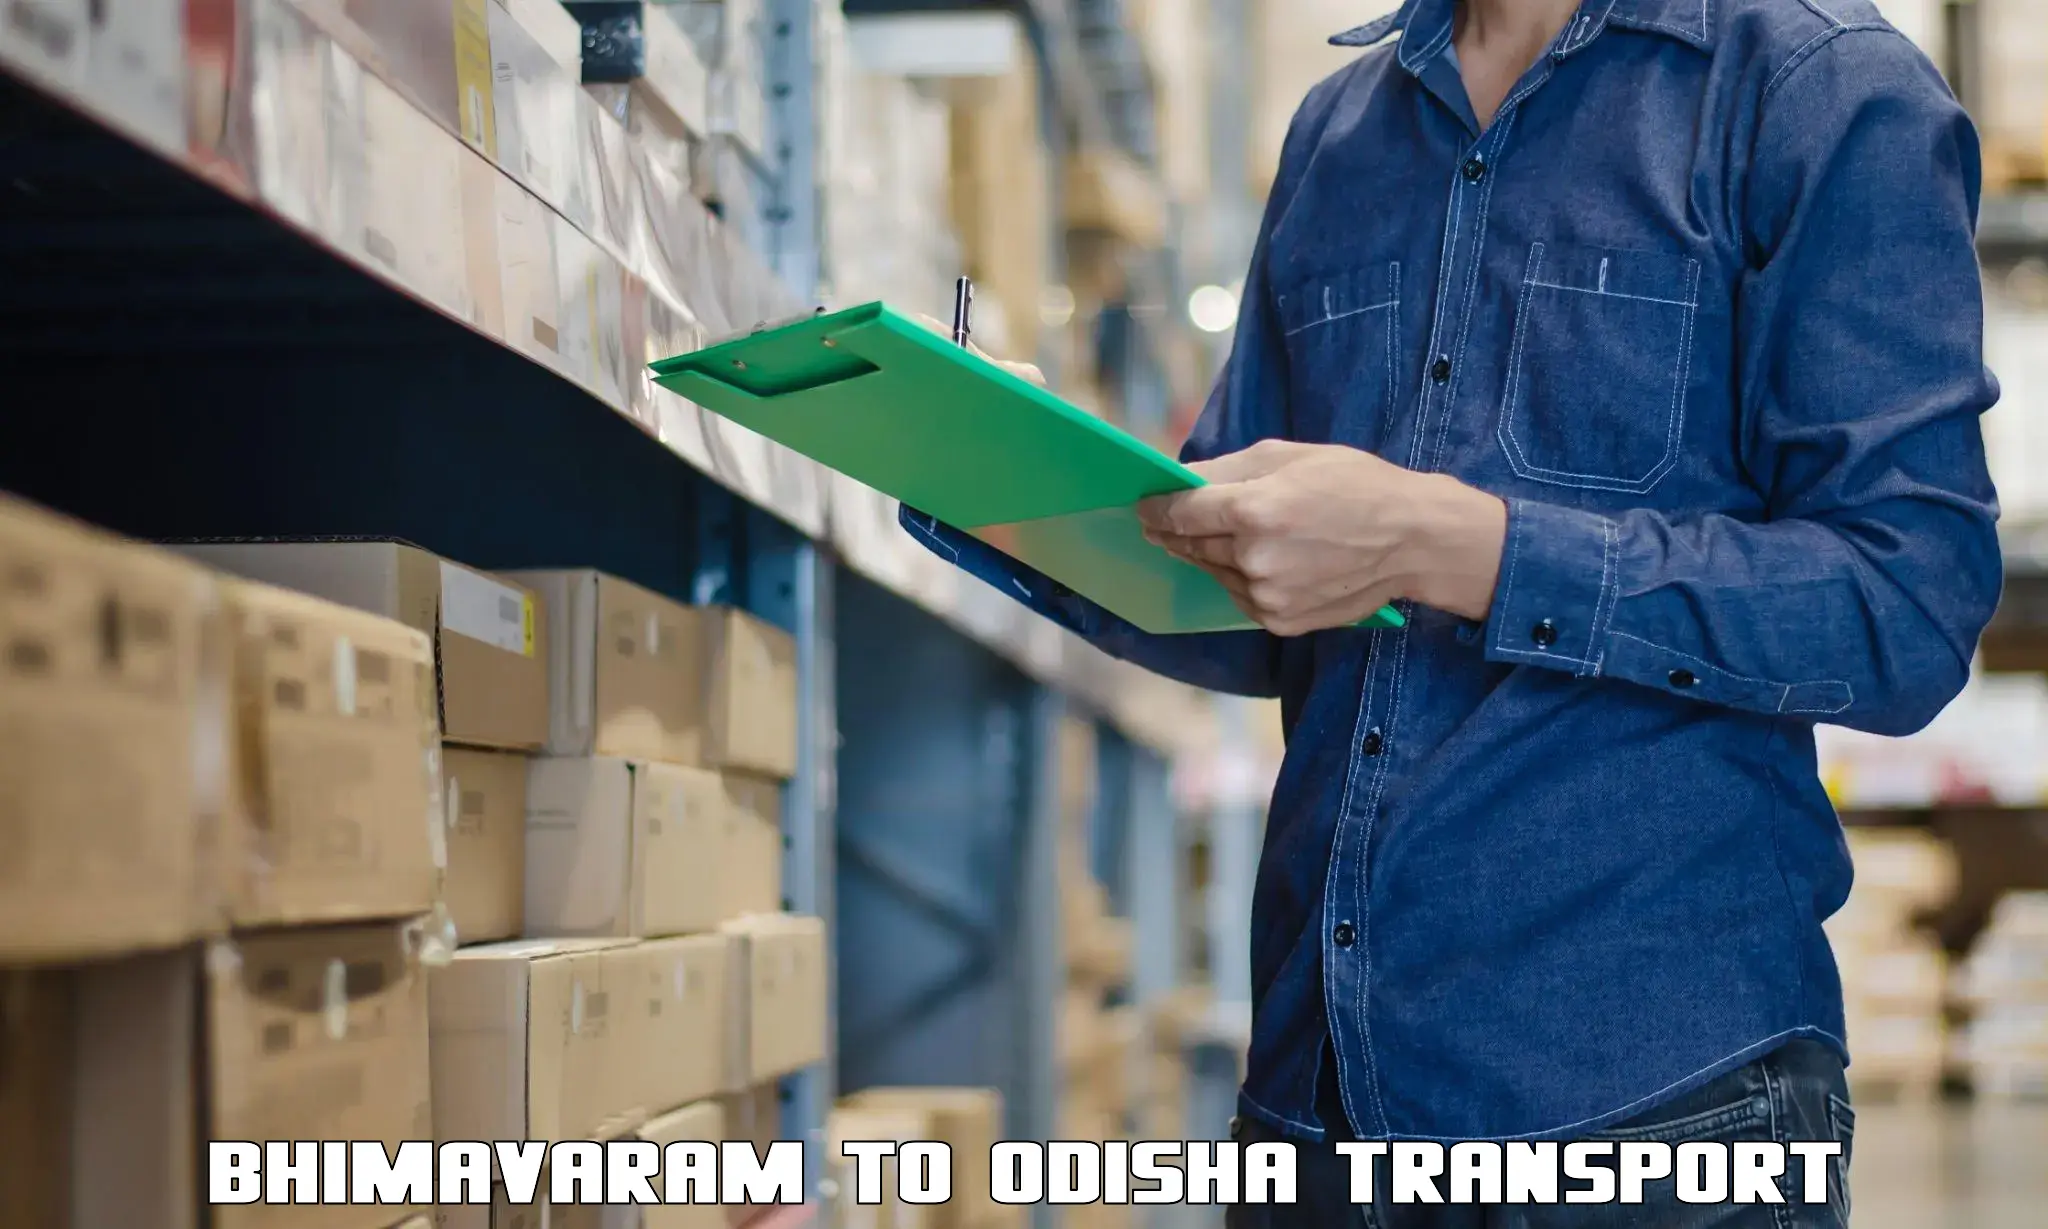 Lorry transport service Bhimavaram to Paikana